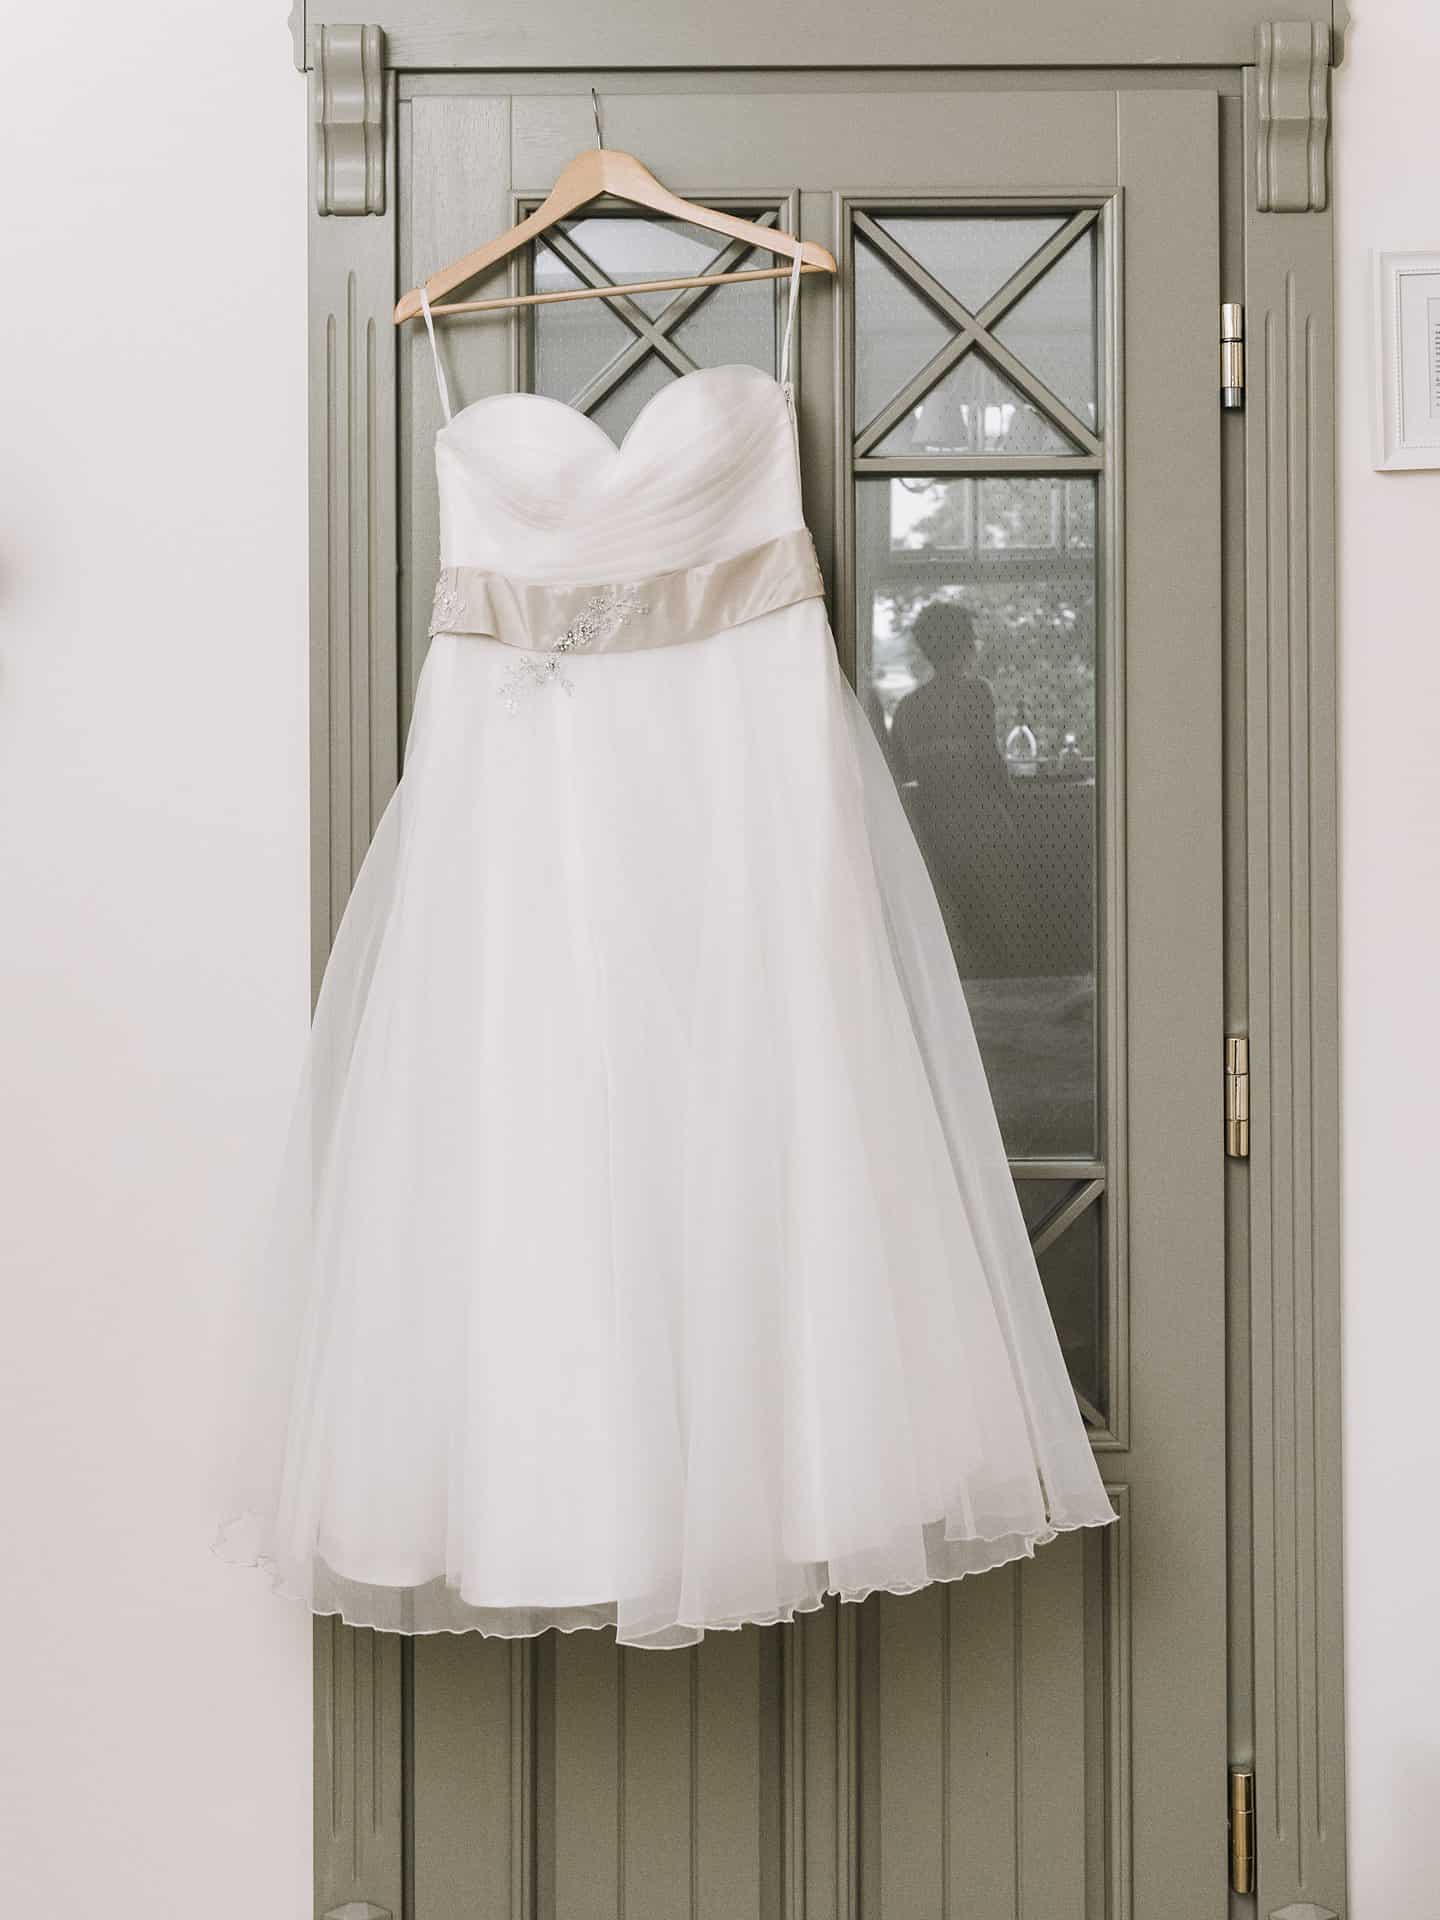 Ein weißes Hochzeitskleid hängt an einer Tür.